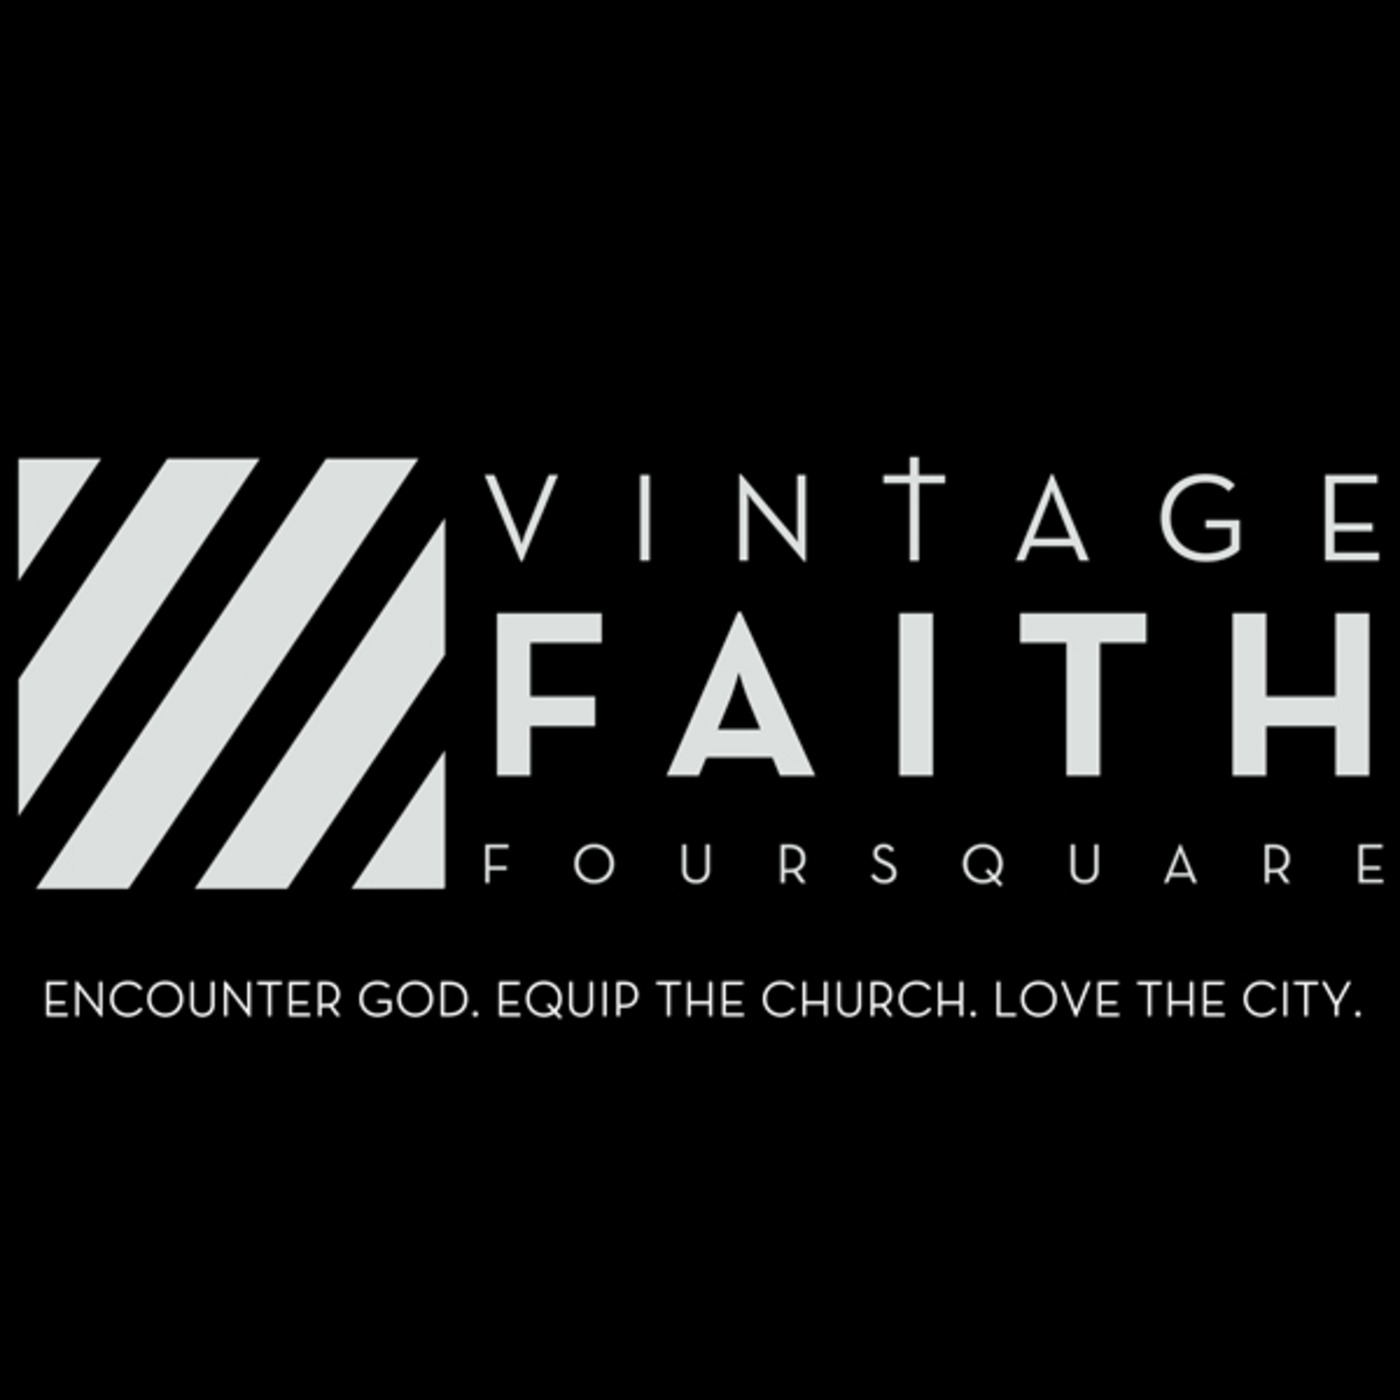 Vintage Faith Foursquare